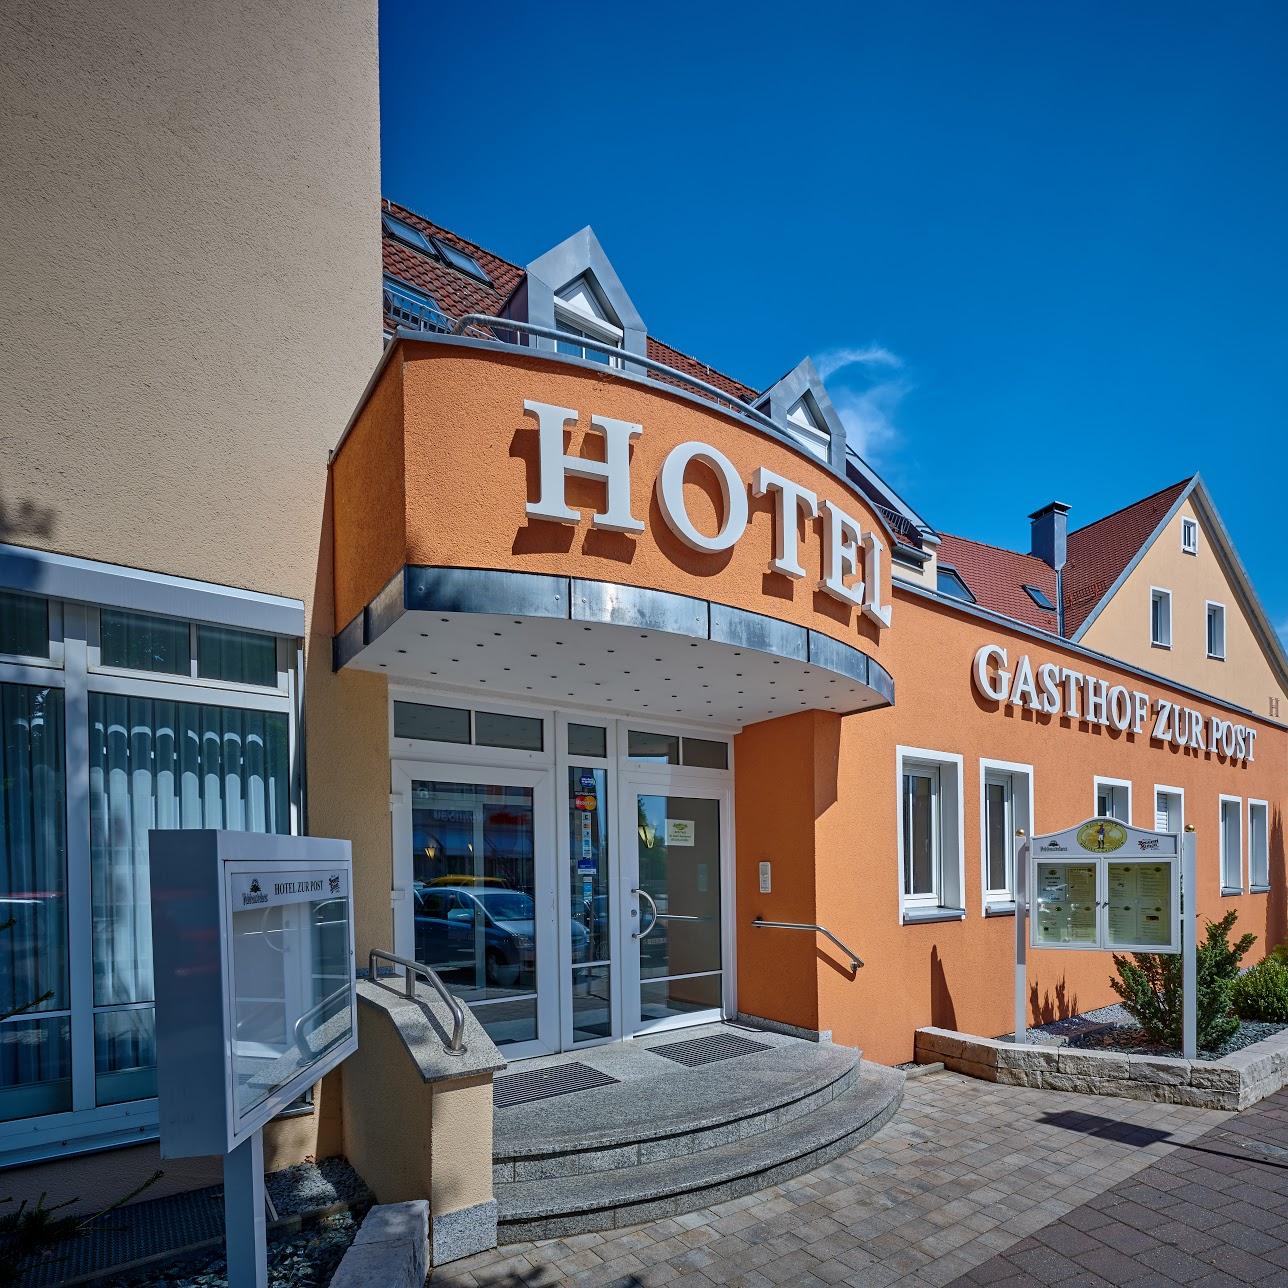 Restaurant "Hotel Gasthof zur Post" in Lauf an der Pegnitz